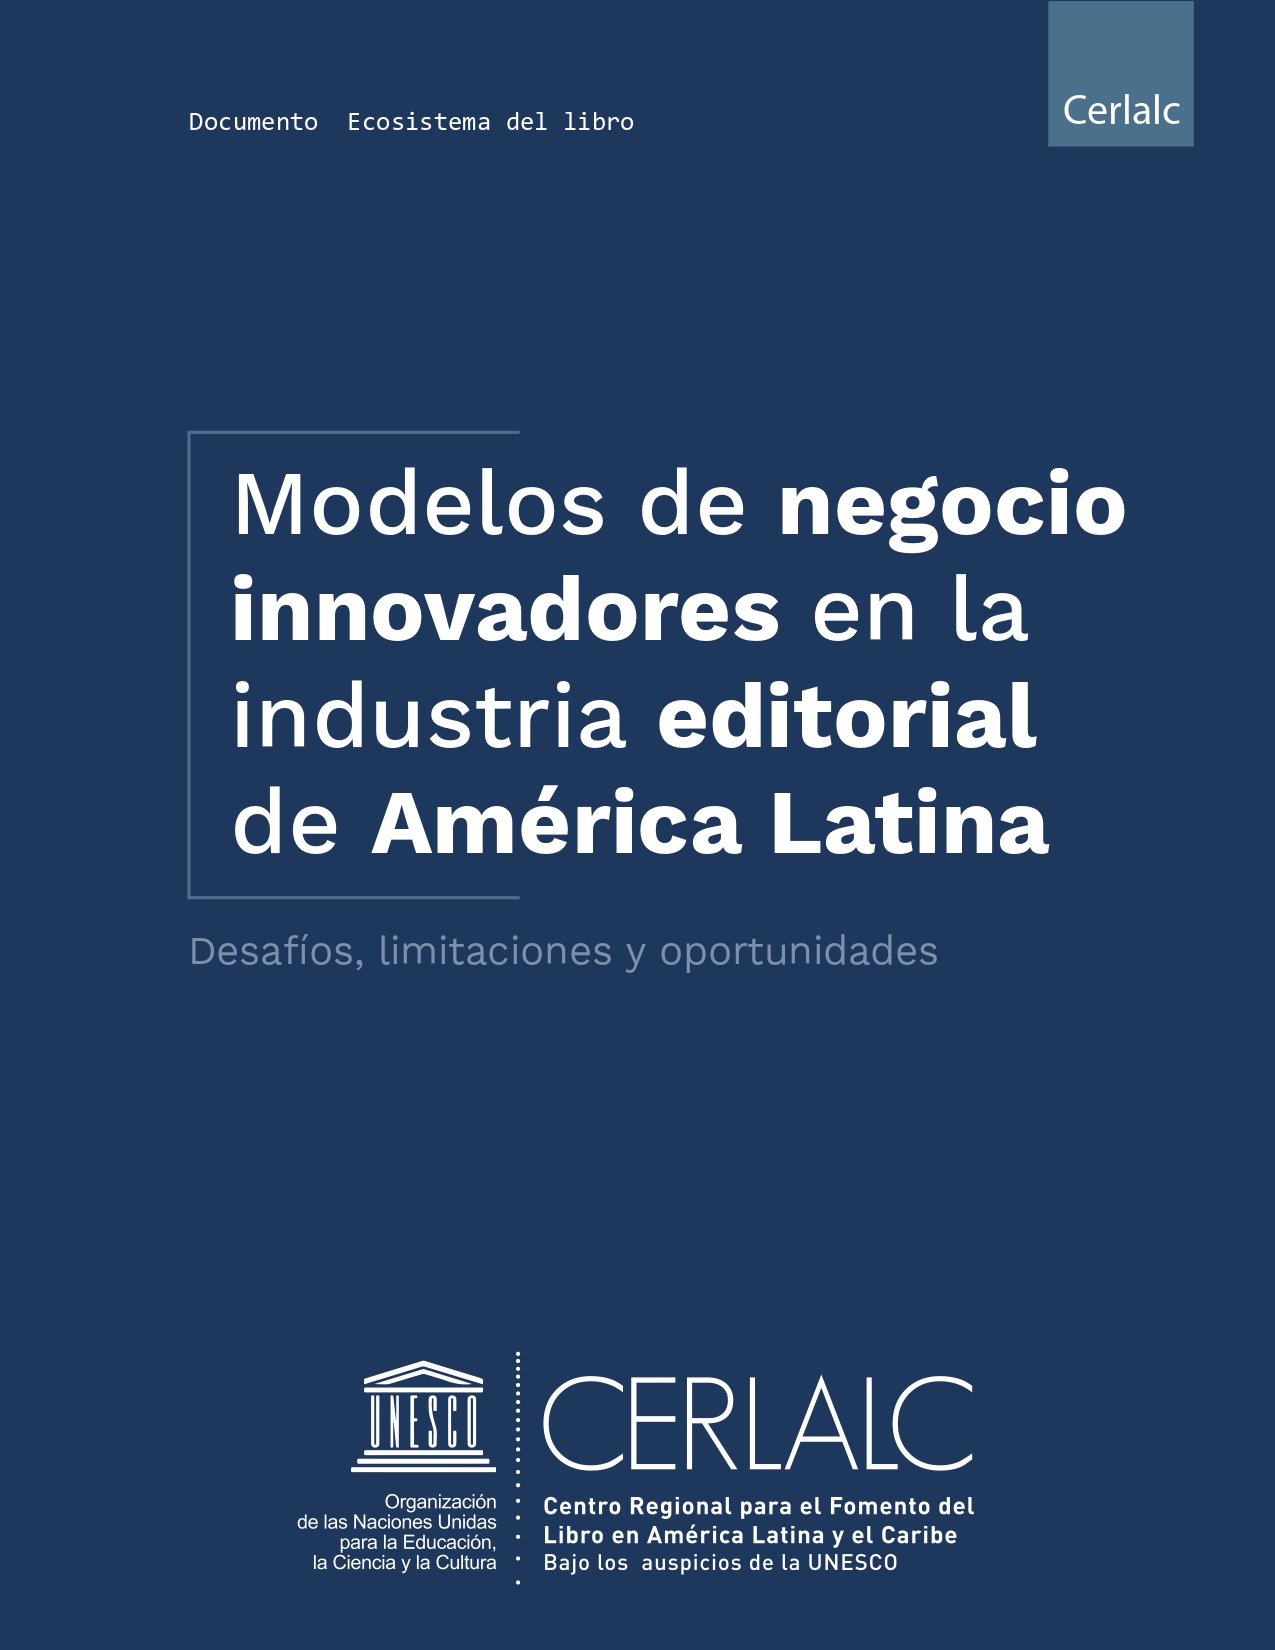 Modelos de negocio innovadores en la industria editorial de América Latina. Desafíos, limitaciones y oportunidades